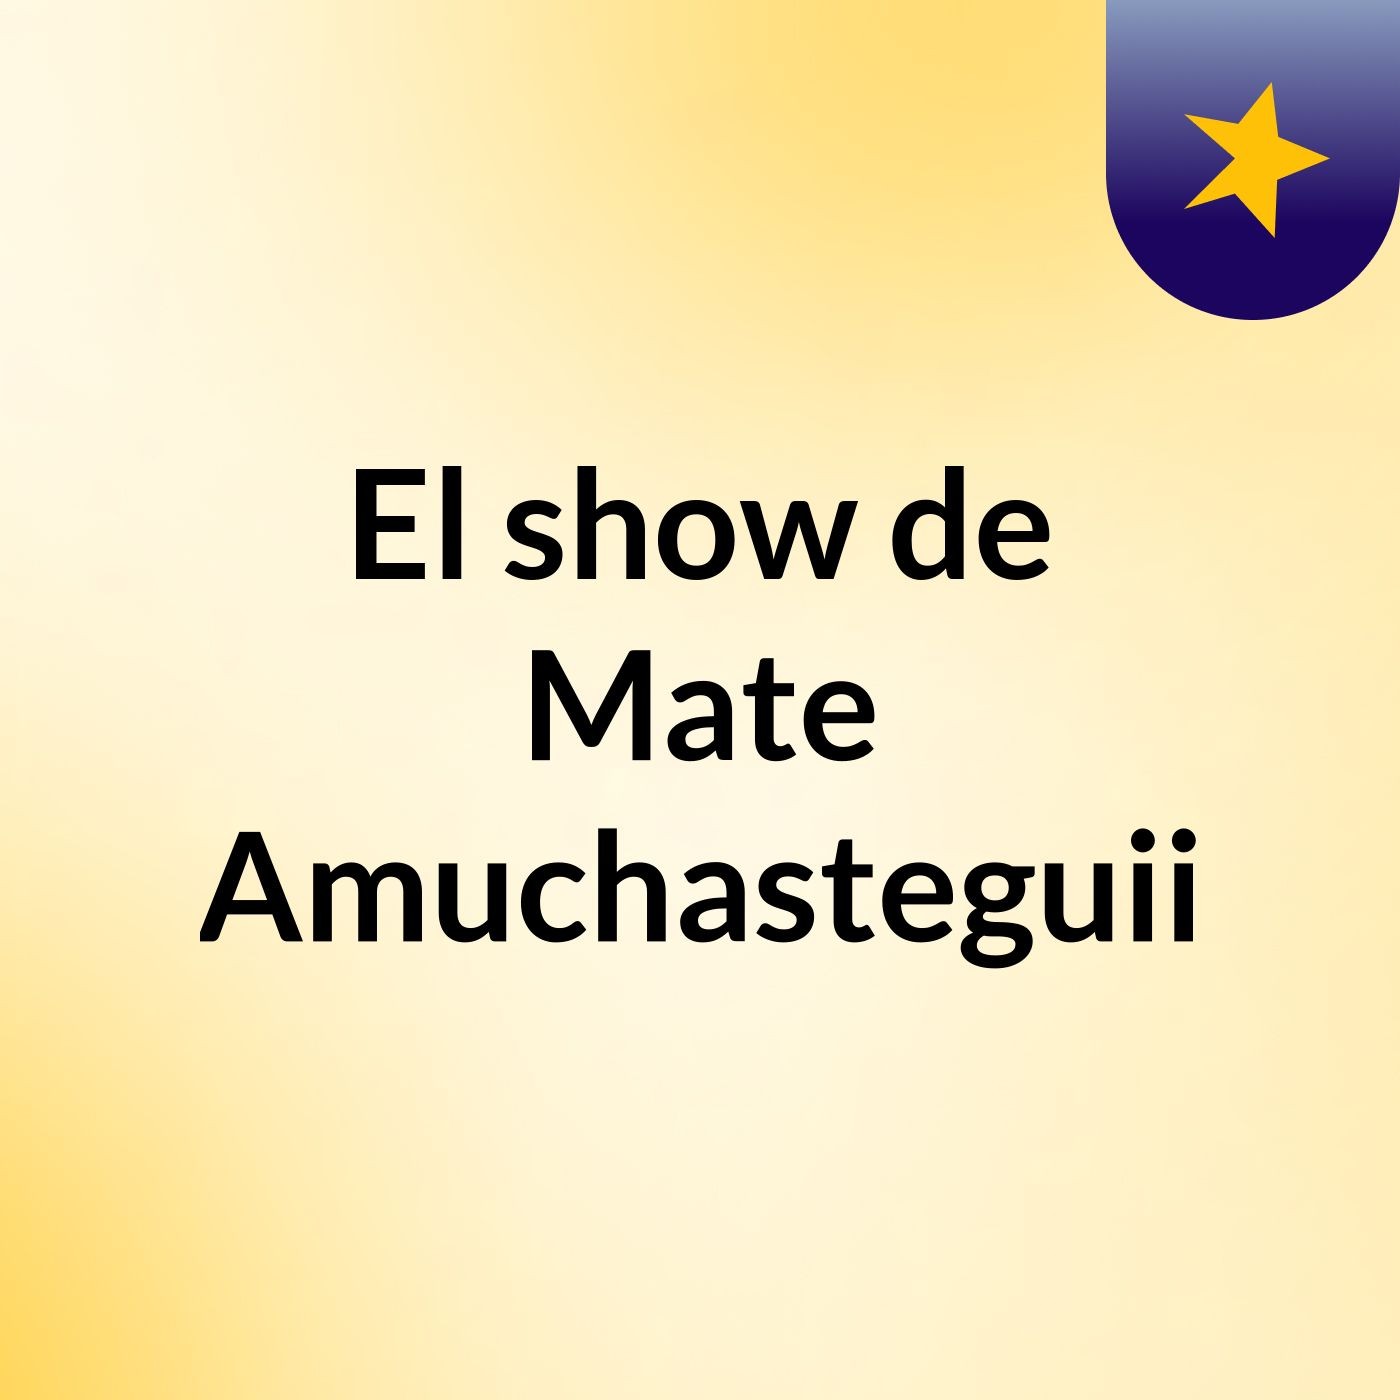 El show de Mate Amuchasteguii